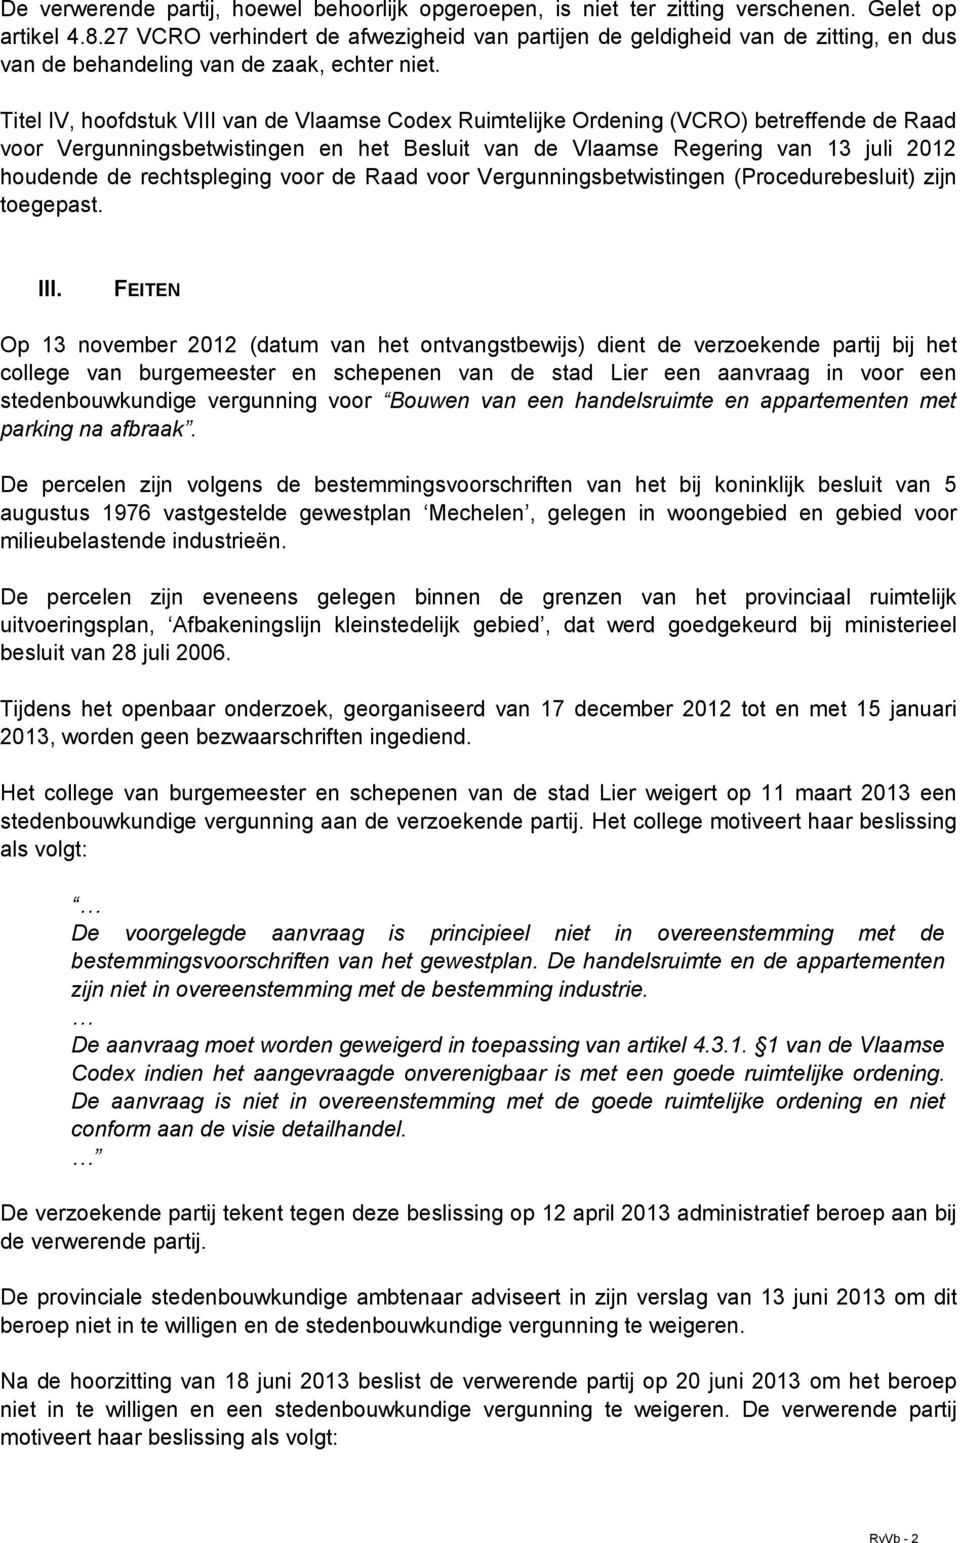 Titel IV, hoofdstuk VIII van de Vlaamse Codex Ruimtelijke Ordening (VCRO) betreffende de Raad voor Vergunningsbetwistingen en het Besluit van de Vlaamse Regering van 13 juli 2012 houdende de